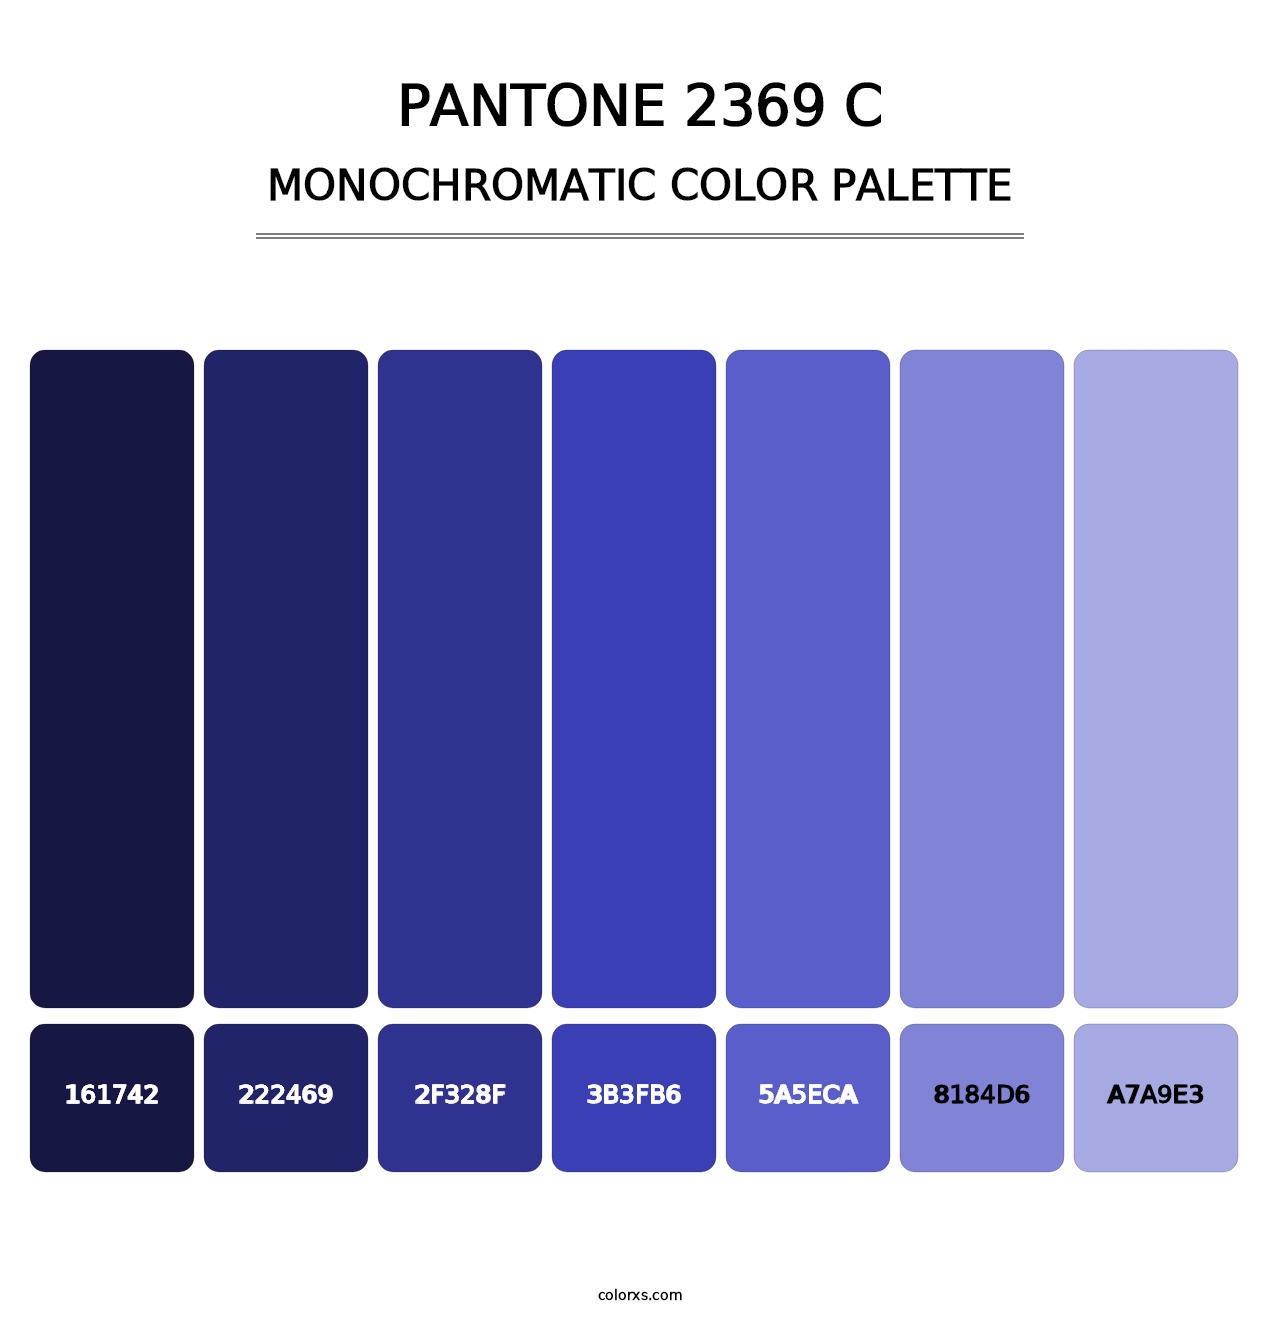 PANTONE 2369 C - Monochromatic Color Palette